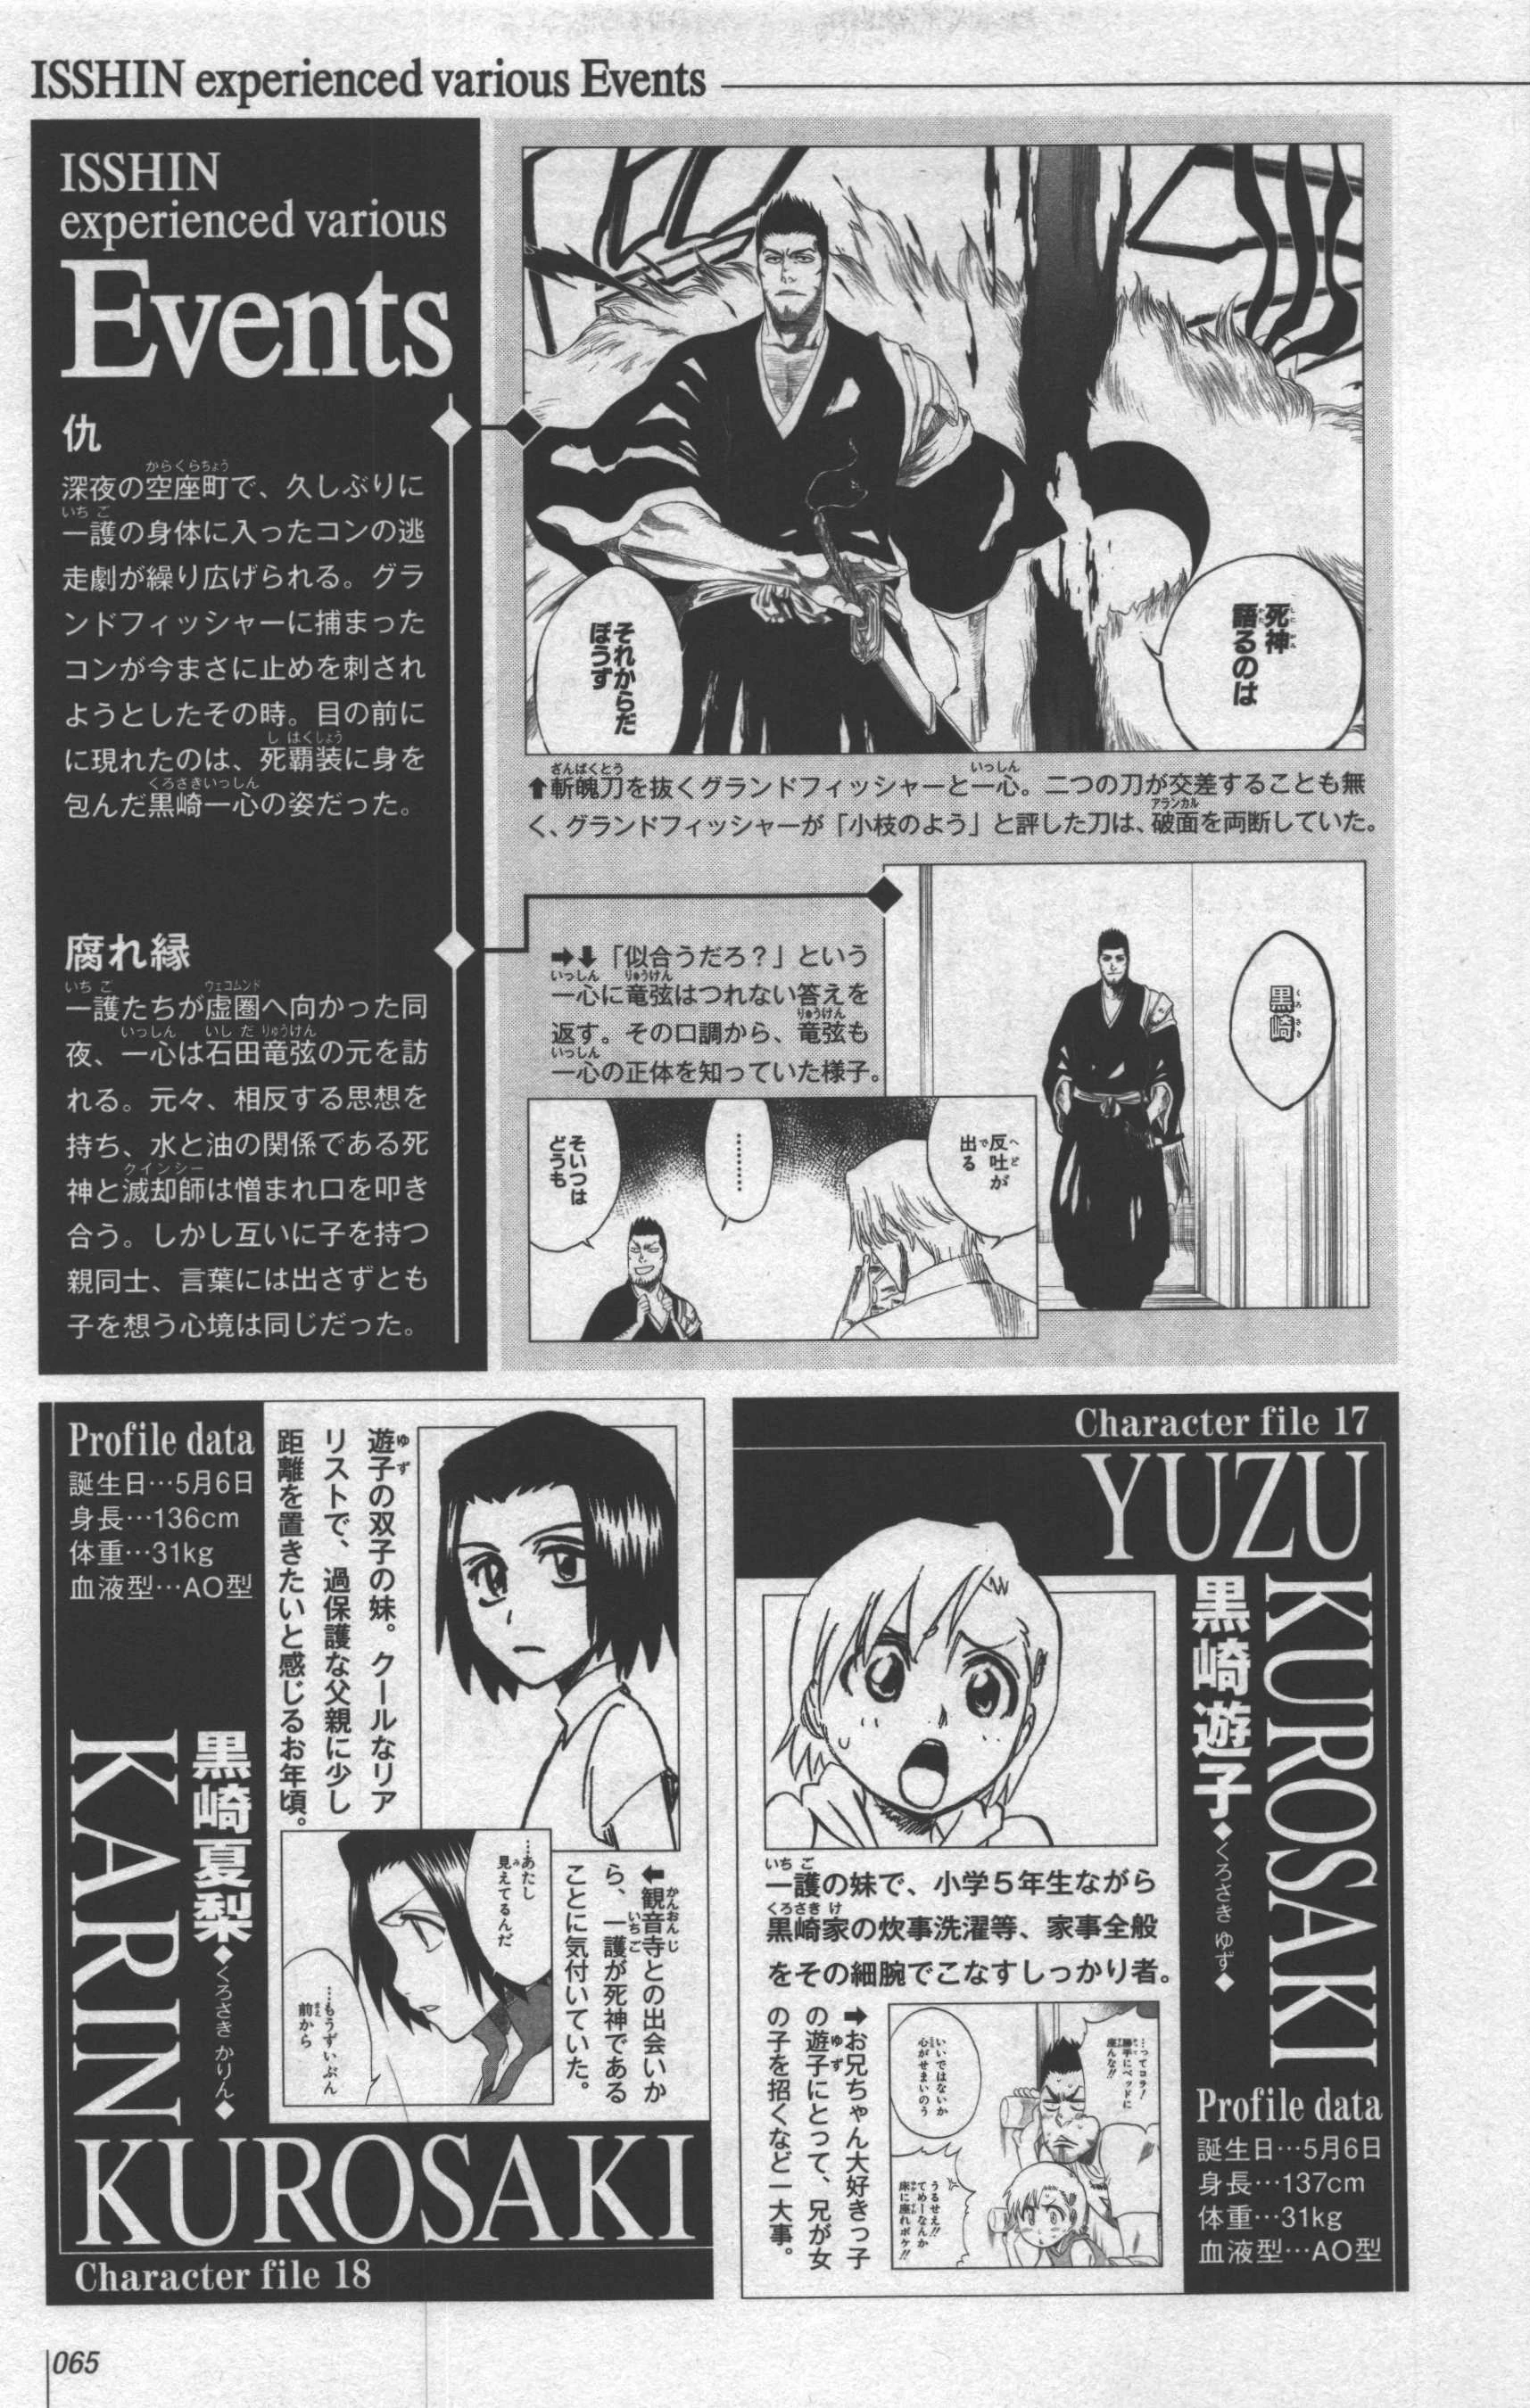 Talk Yuzu Kurosaki Archive 1 Bleach Wiki Fandom